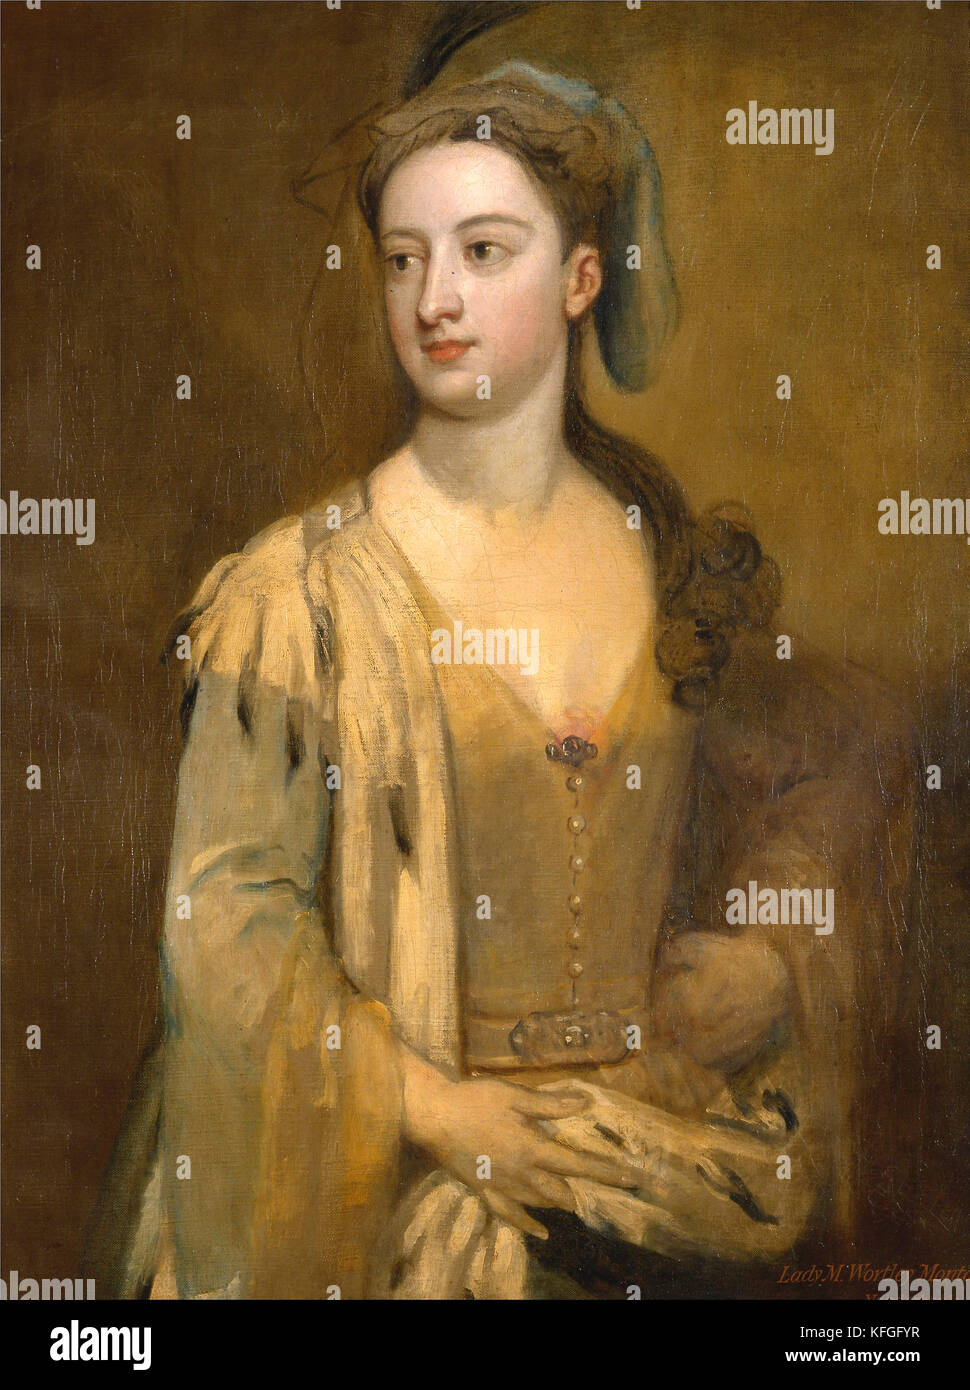 Una mujer llamada Lady Mary Wortley montagu por Godfrey kneller Foto de stock